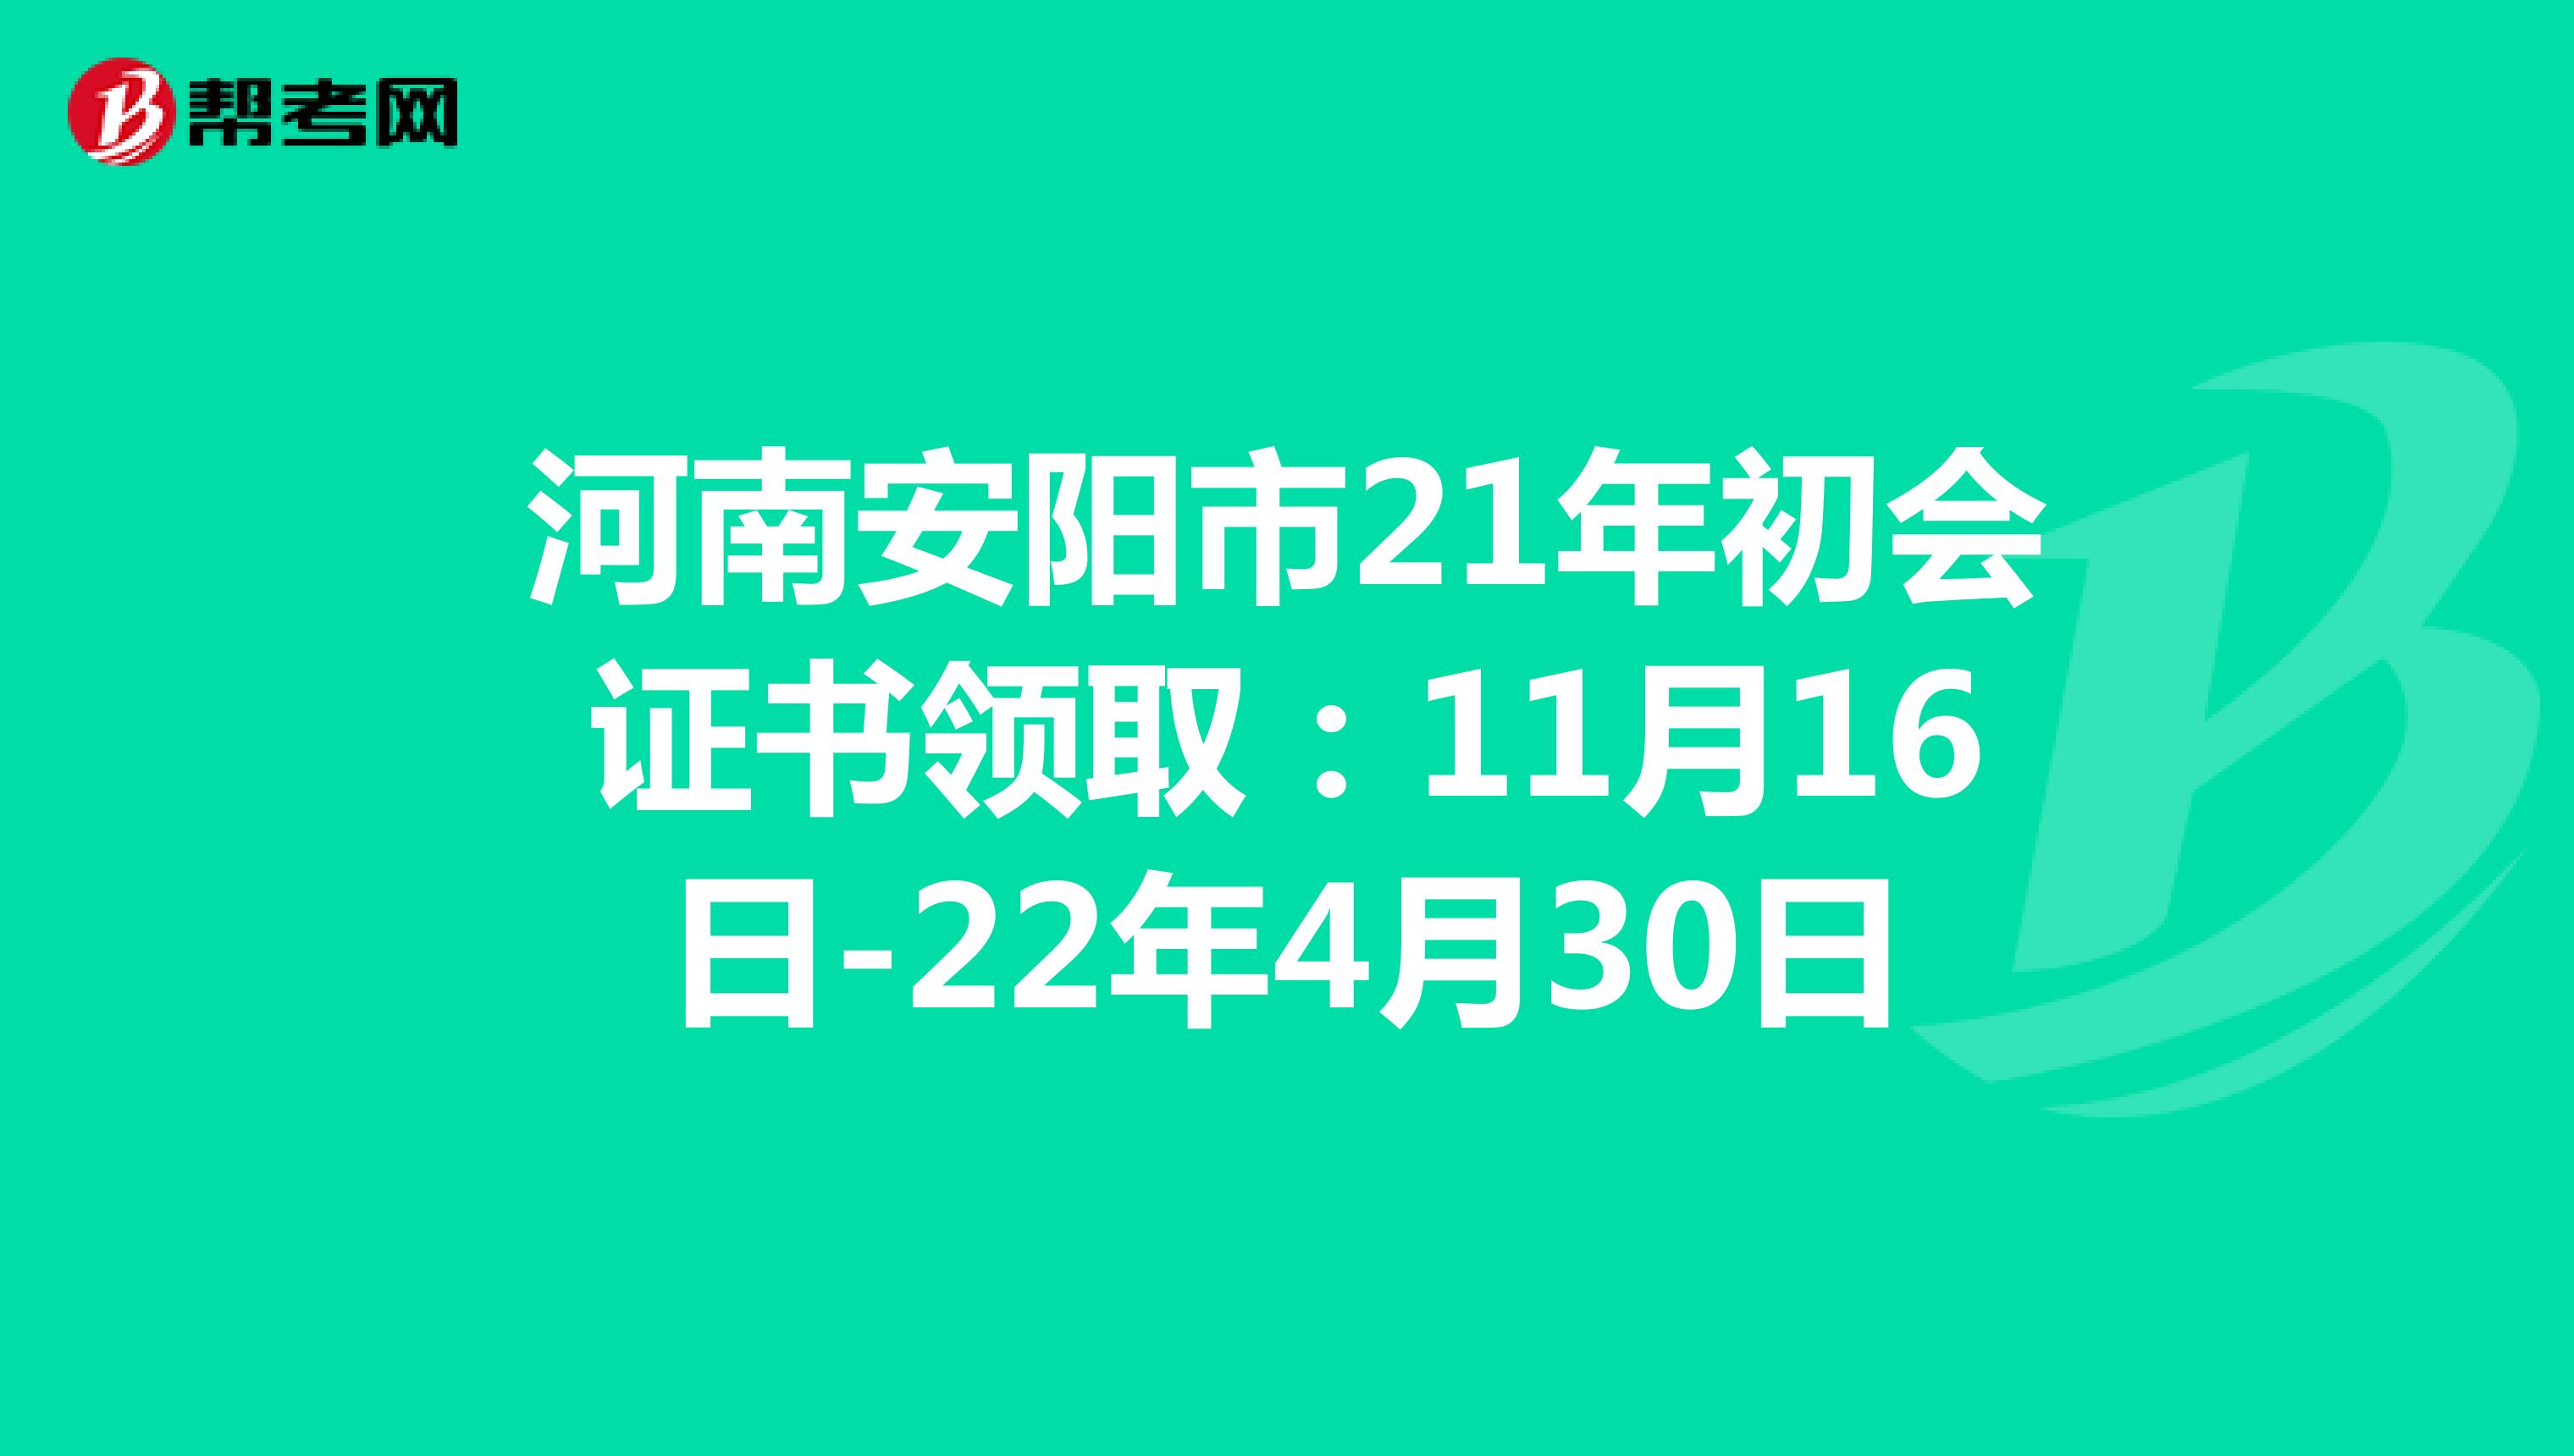 河南安阳市21年初会证书领取：11月16日-22年4月30日